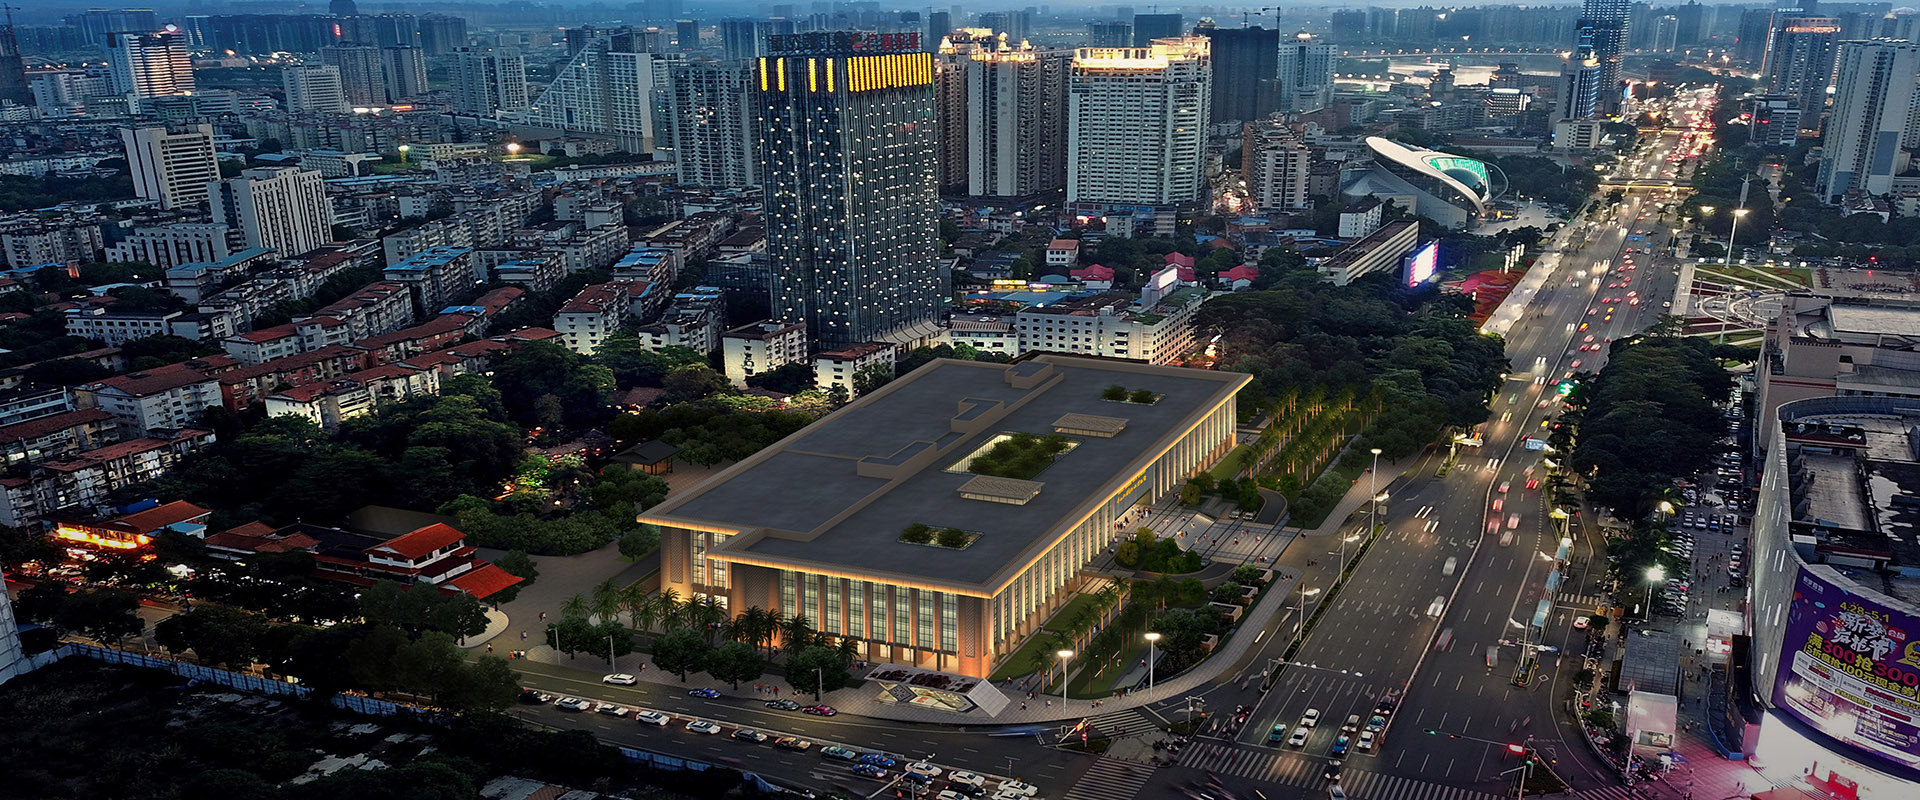 廣西壯族自治區博物館改擴建項目